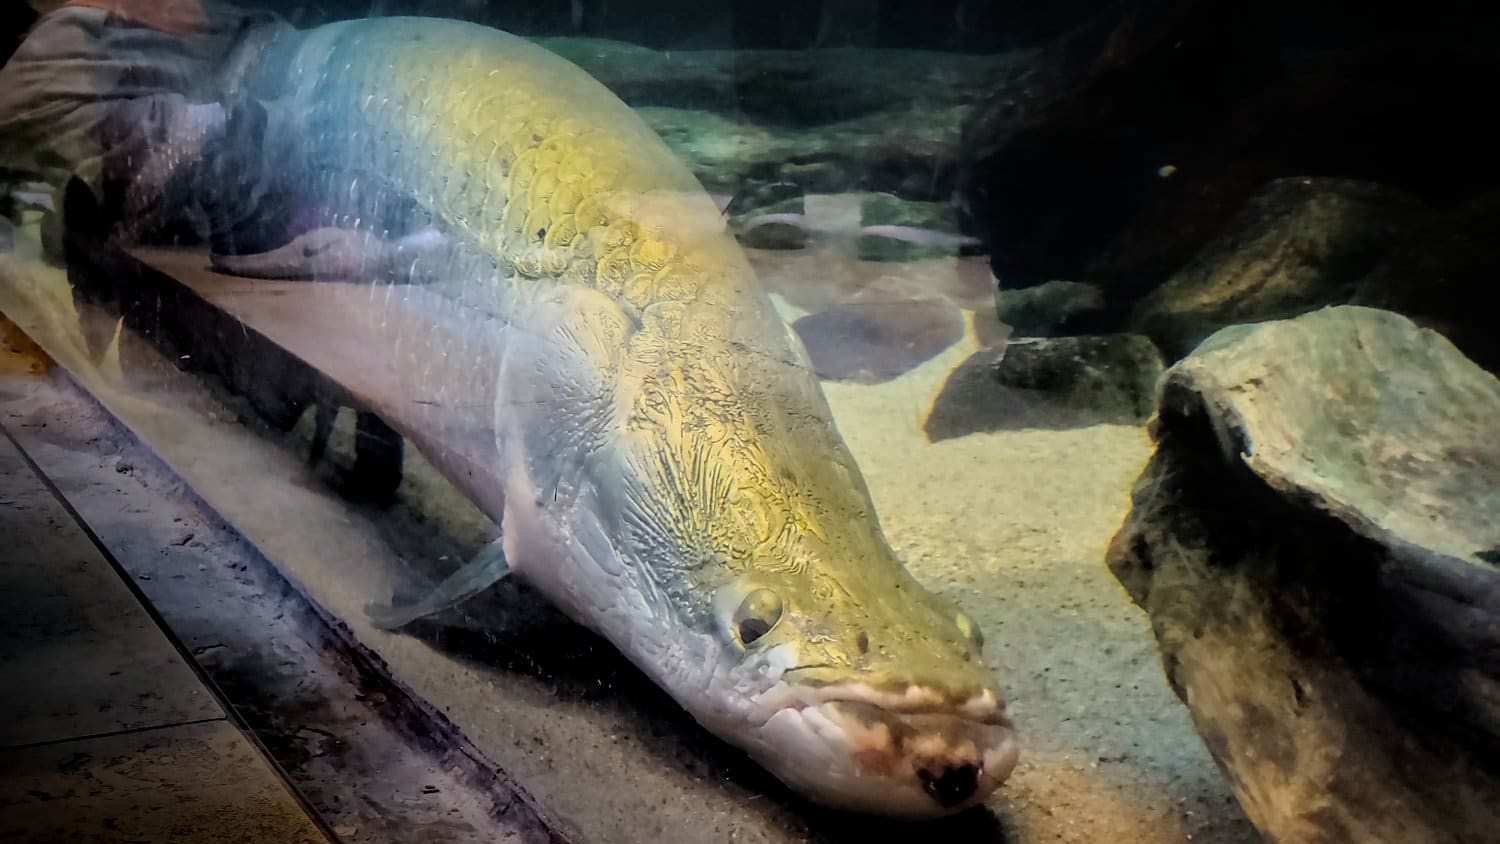 Amazing fish at Shedd Aquarium.